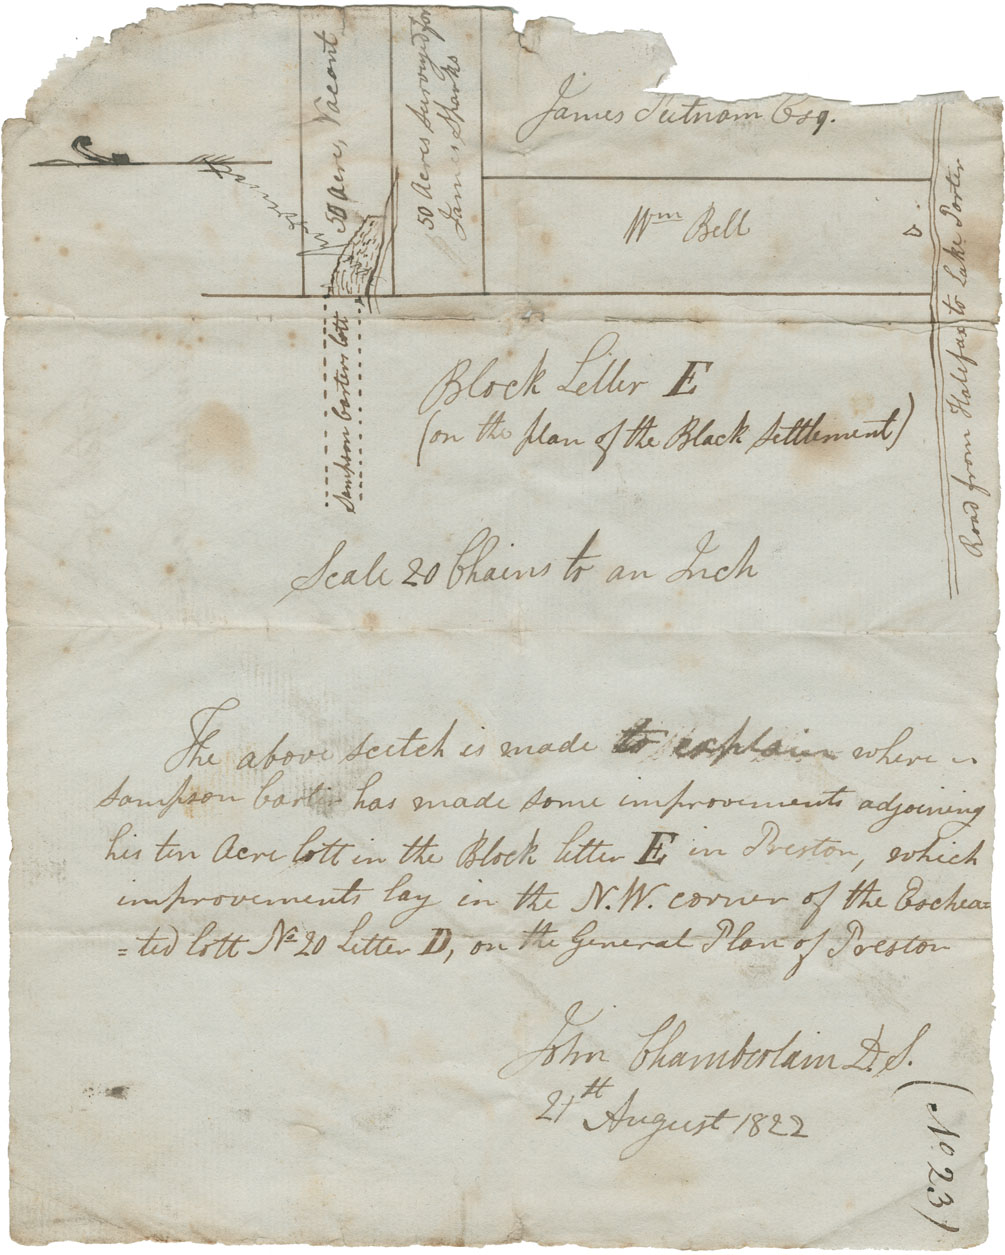 John Chamberlain's sketch of lands in or near to Block Letter E on plan of Black settlement at Preston. Sampson Carter improvements